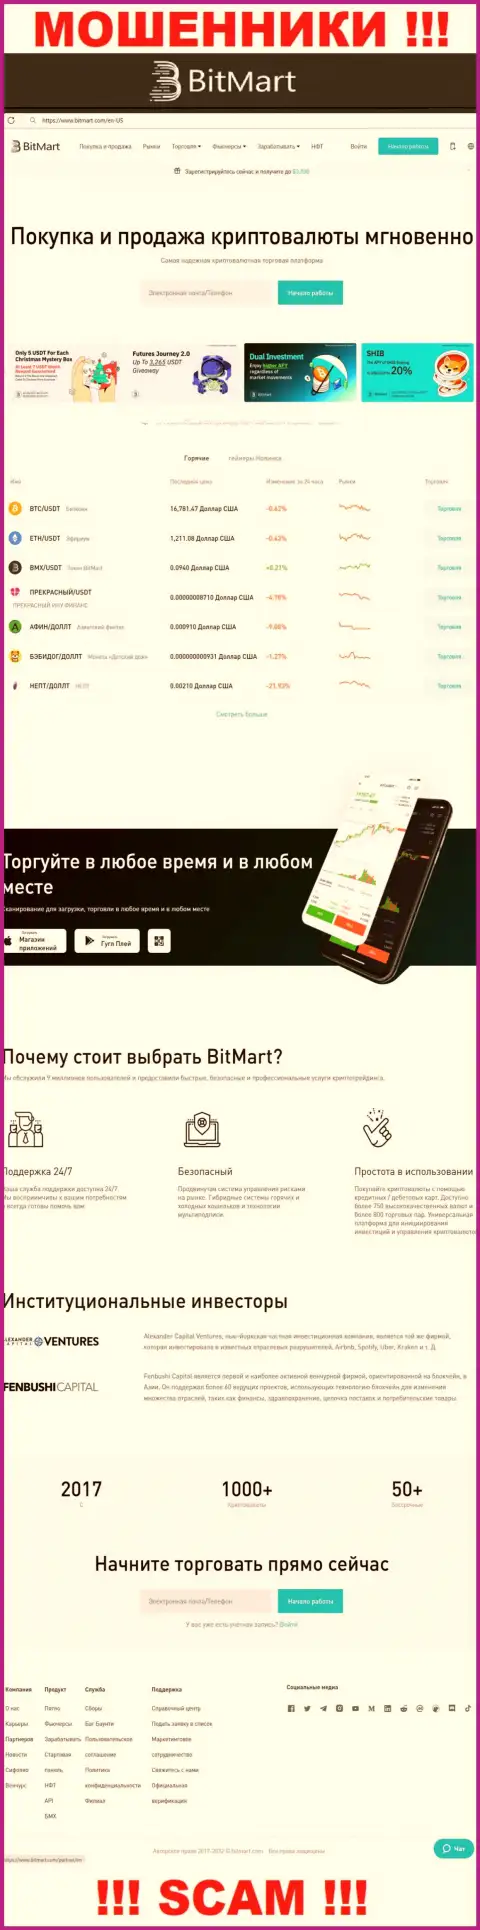 Внешний вид веб-сервиса противоправно действующей компании BitMart